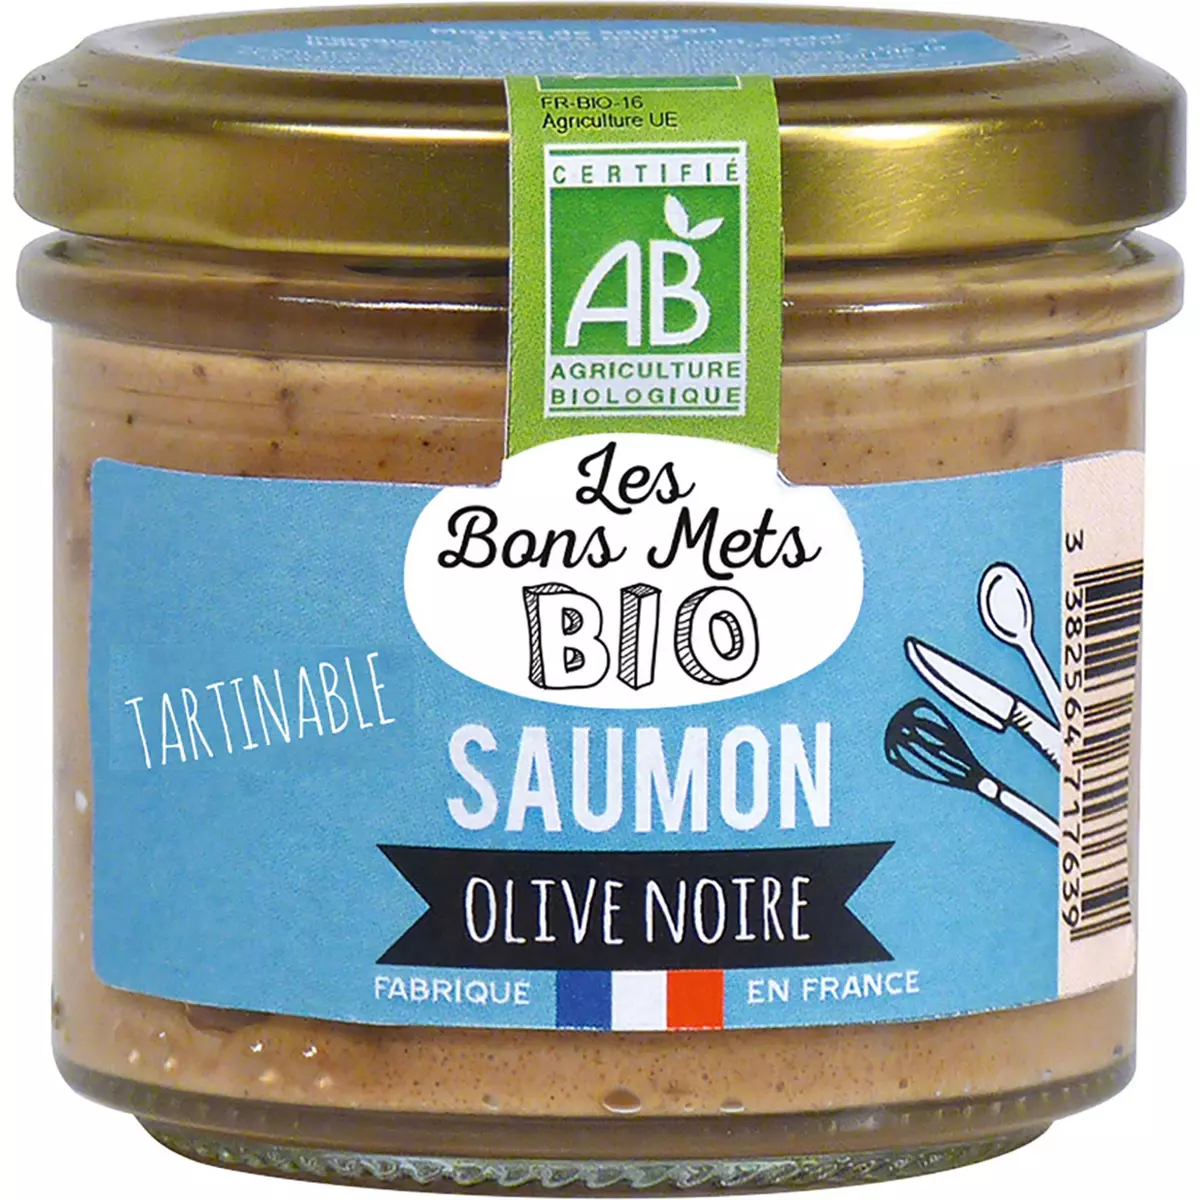 LES BONS METS BIO Tartinable saumon olive noire 90g